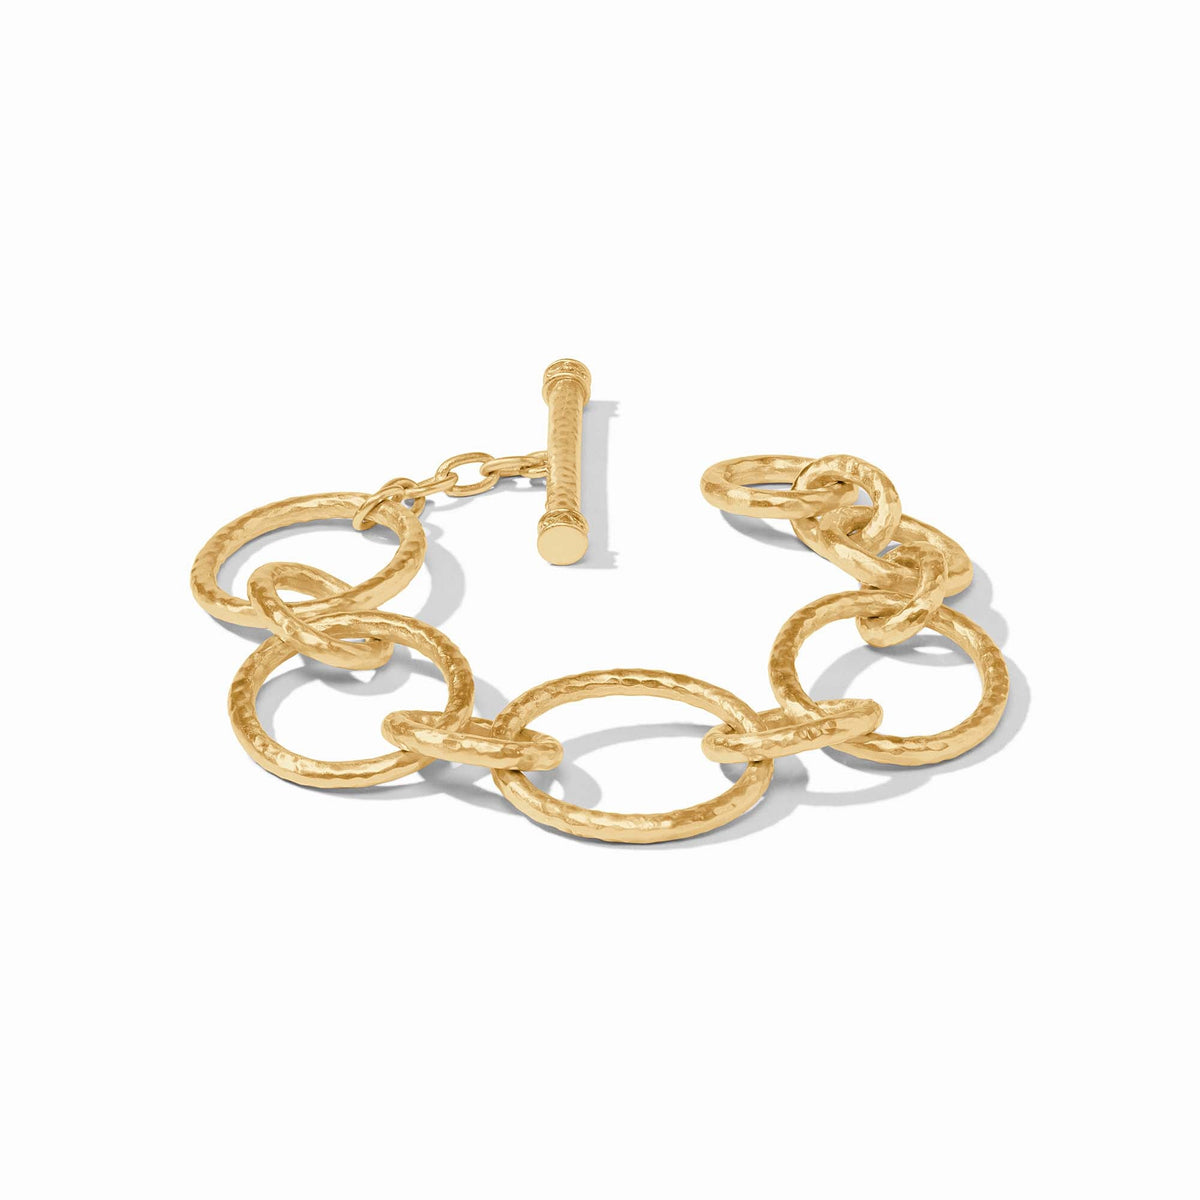 Julie Vos - Catalina Light Link Bracelet, Gold